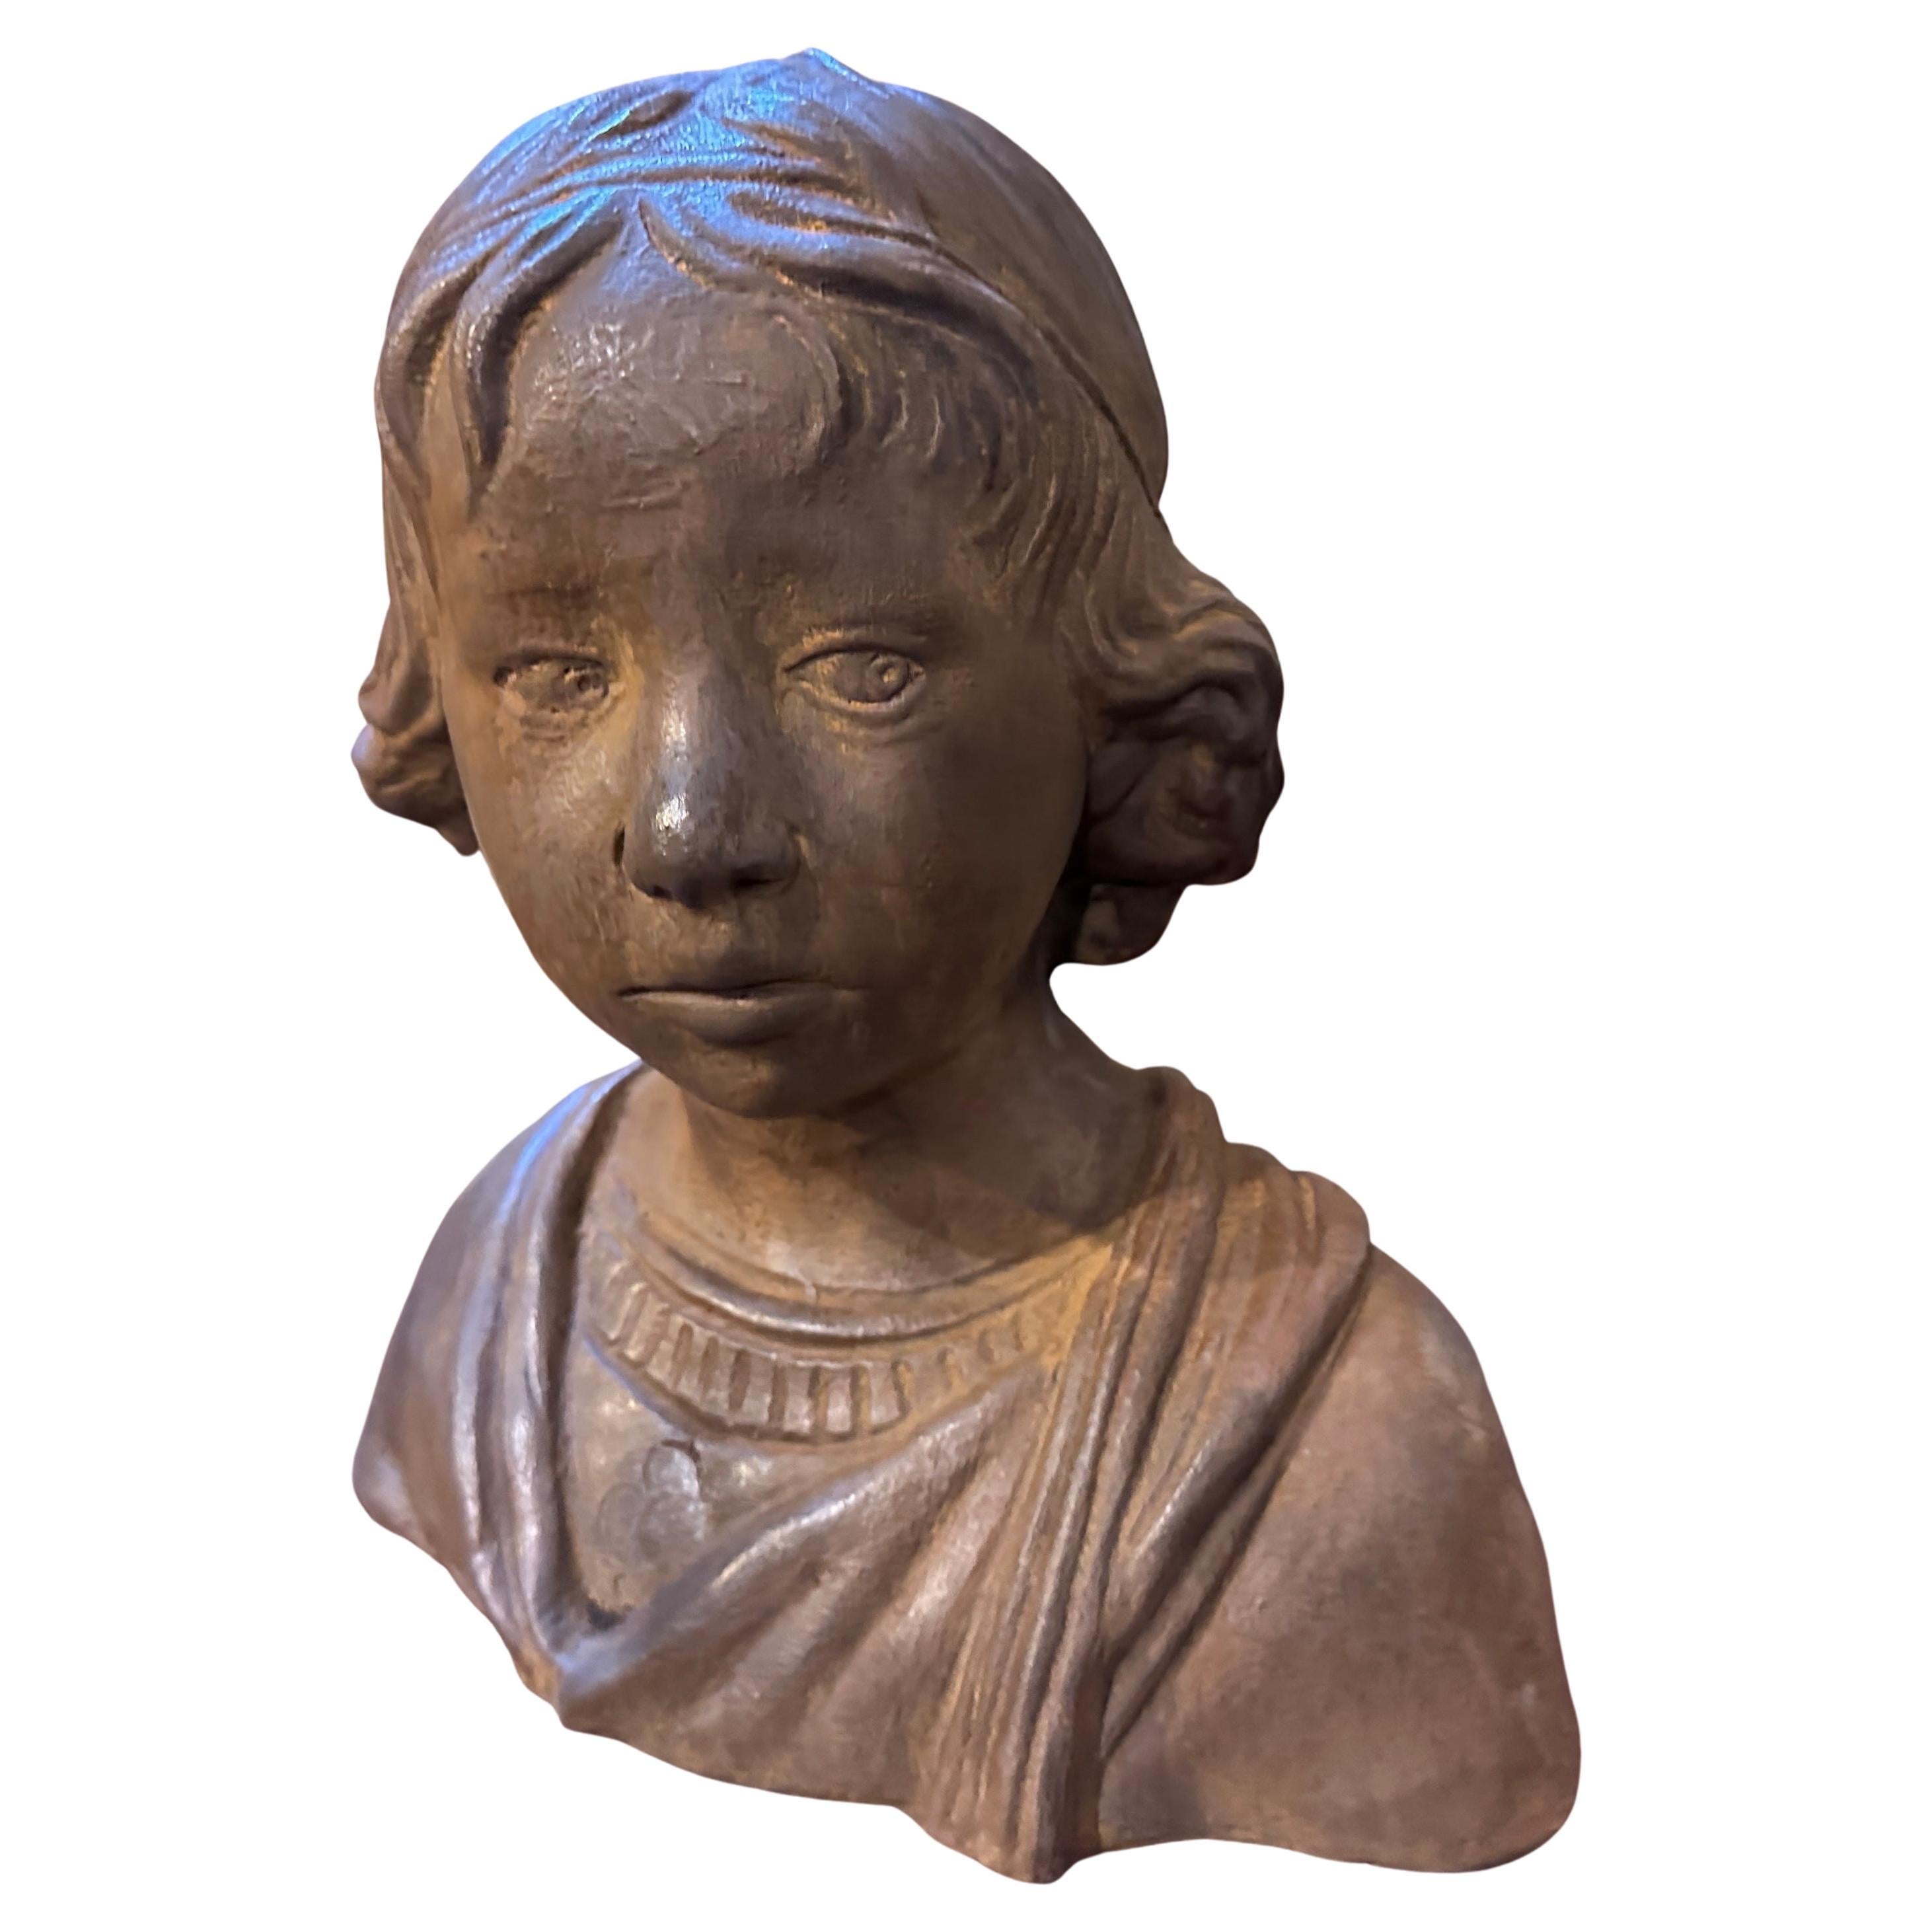 Un buste sicilien en terre cuite fabriqué à la main dans les années 1930 et représentant une jeune fille serait un artefact unique et potentiellement précieux. La Sicile, une île d'Italie, possède une riche histoire en matière d'artisanat de la